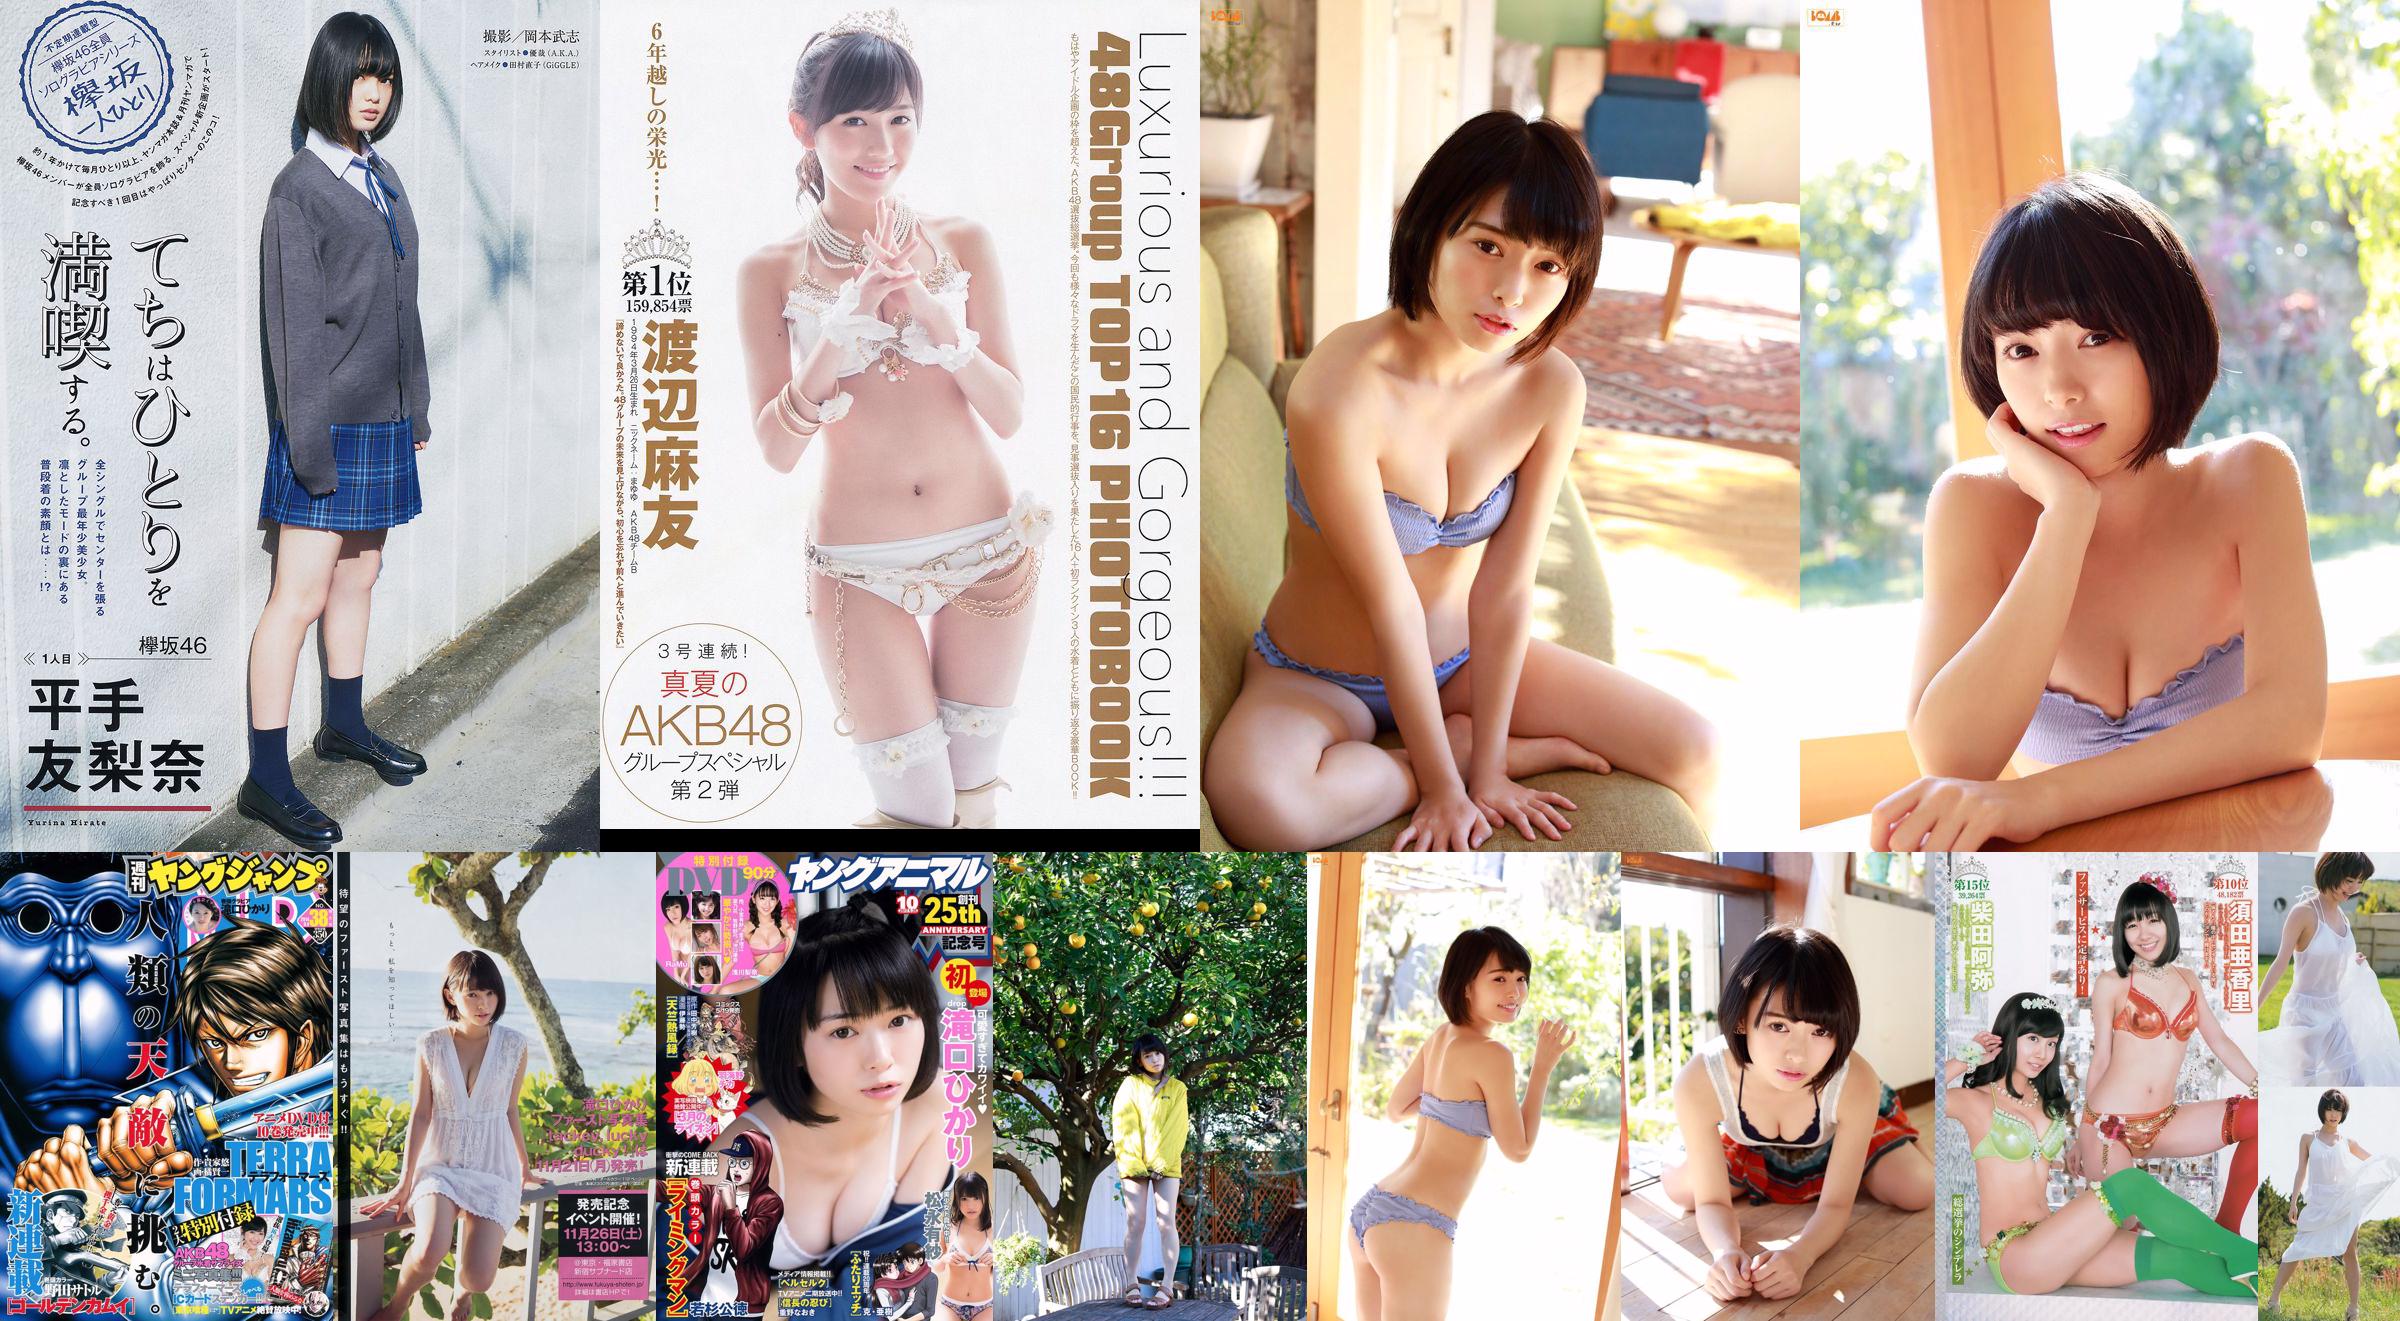 Hikari Takiguchi Hinako Kinoshita AKB48 Nonoka Ono [Saut hebdomadaire des jeunes] 2014 No.38 Photo No.f4a1f4 Page 1